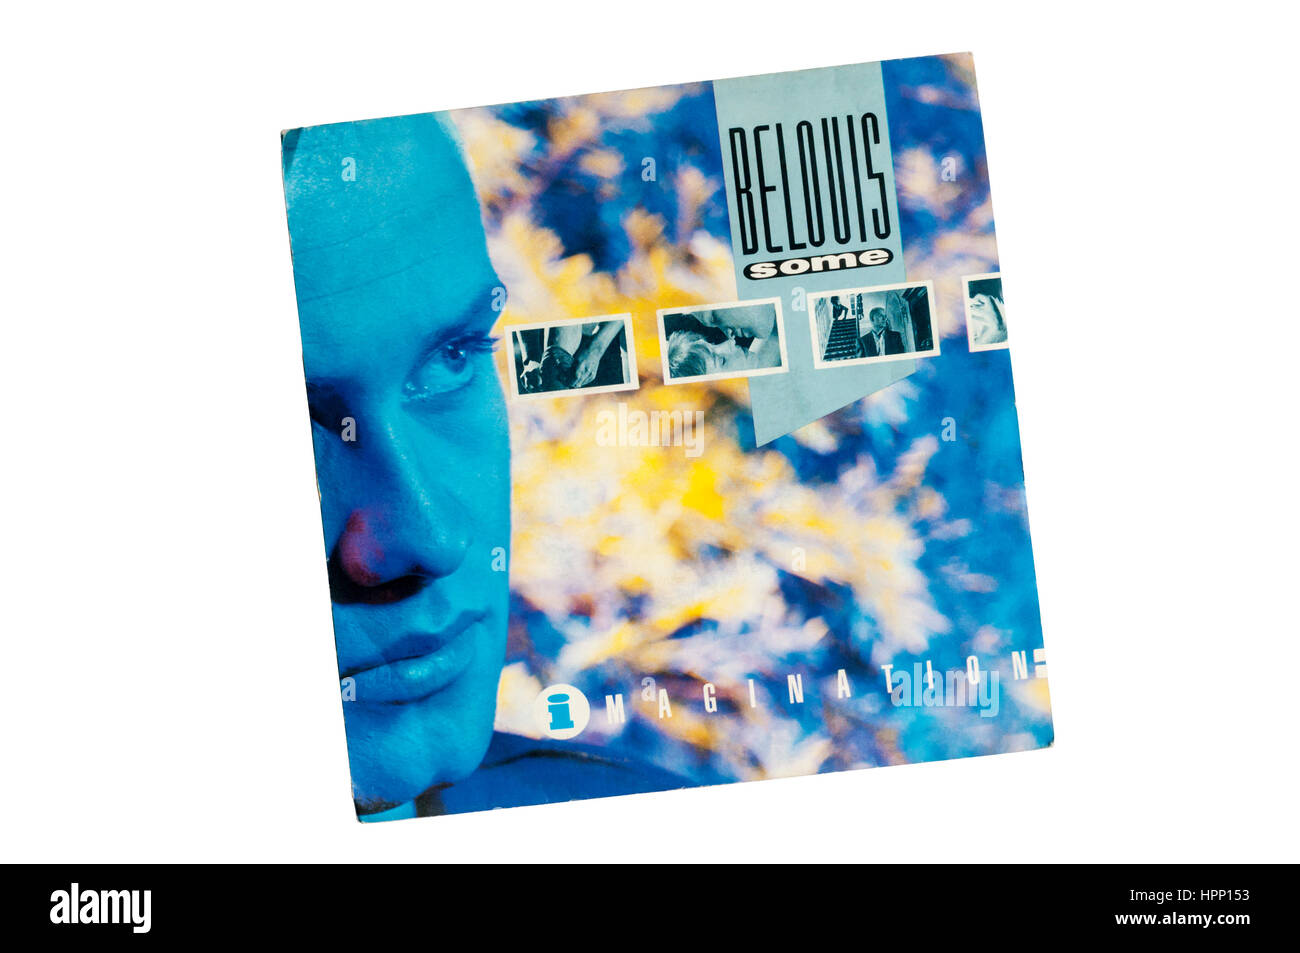 Vorstellung war ein einziges 1985 von Belouis einige aus seinem 1985 Debüt-Album Some Menschen. Stockfoto